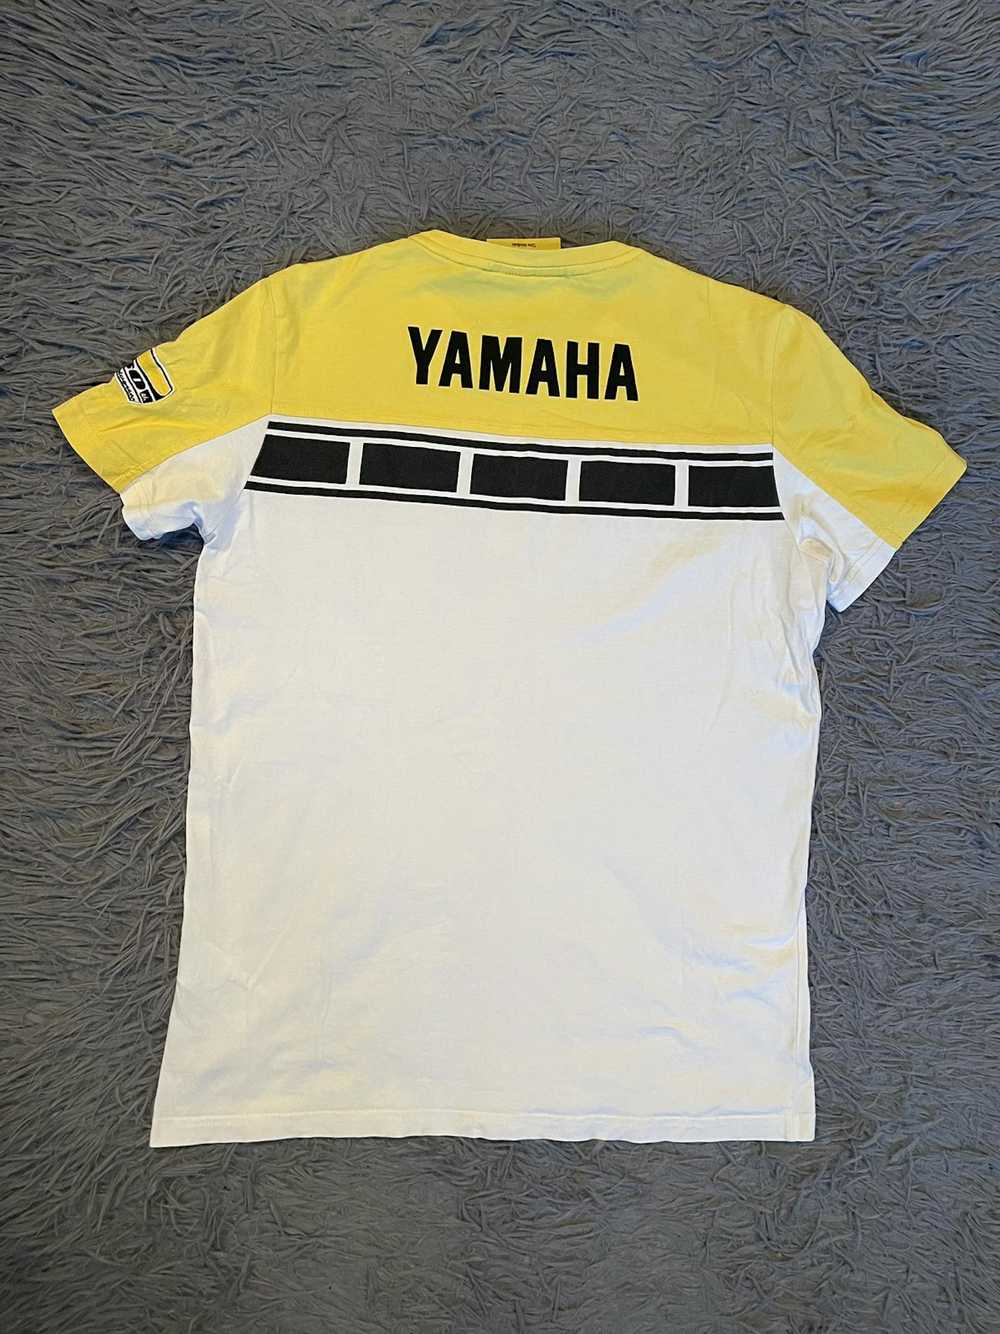 Racing × Vintage × Yamaha Yamaha 60th anniversary… - image 1